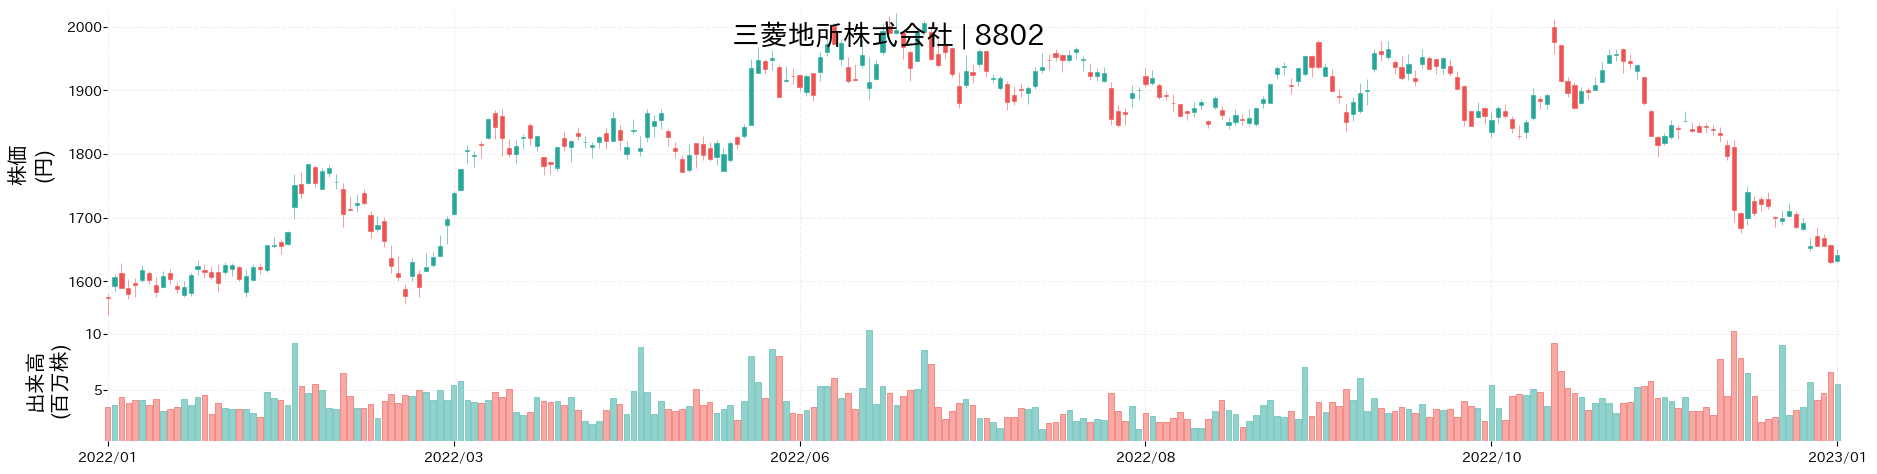 三菱地所の株価推移(2022)